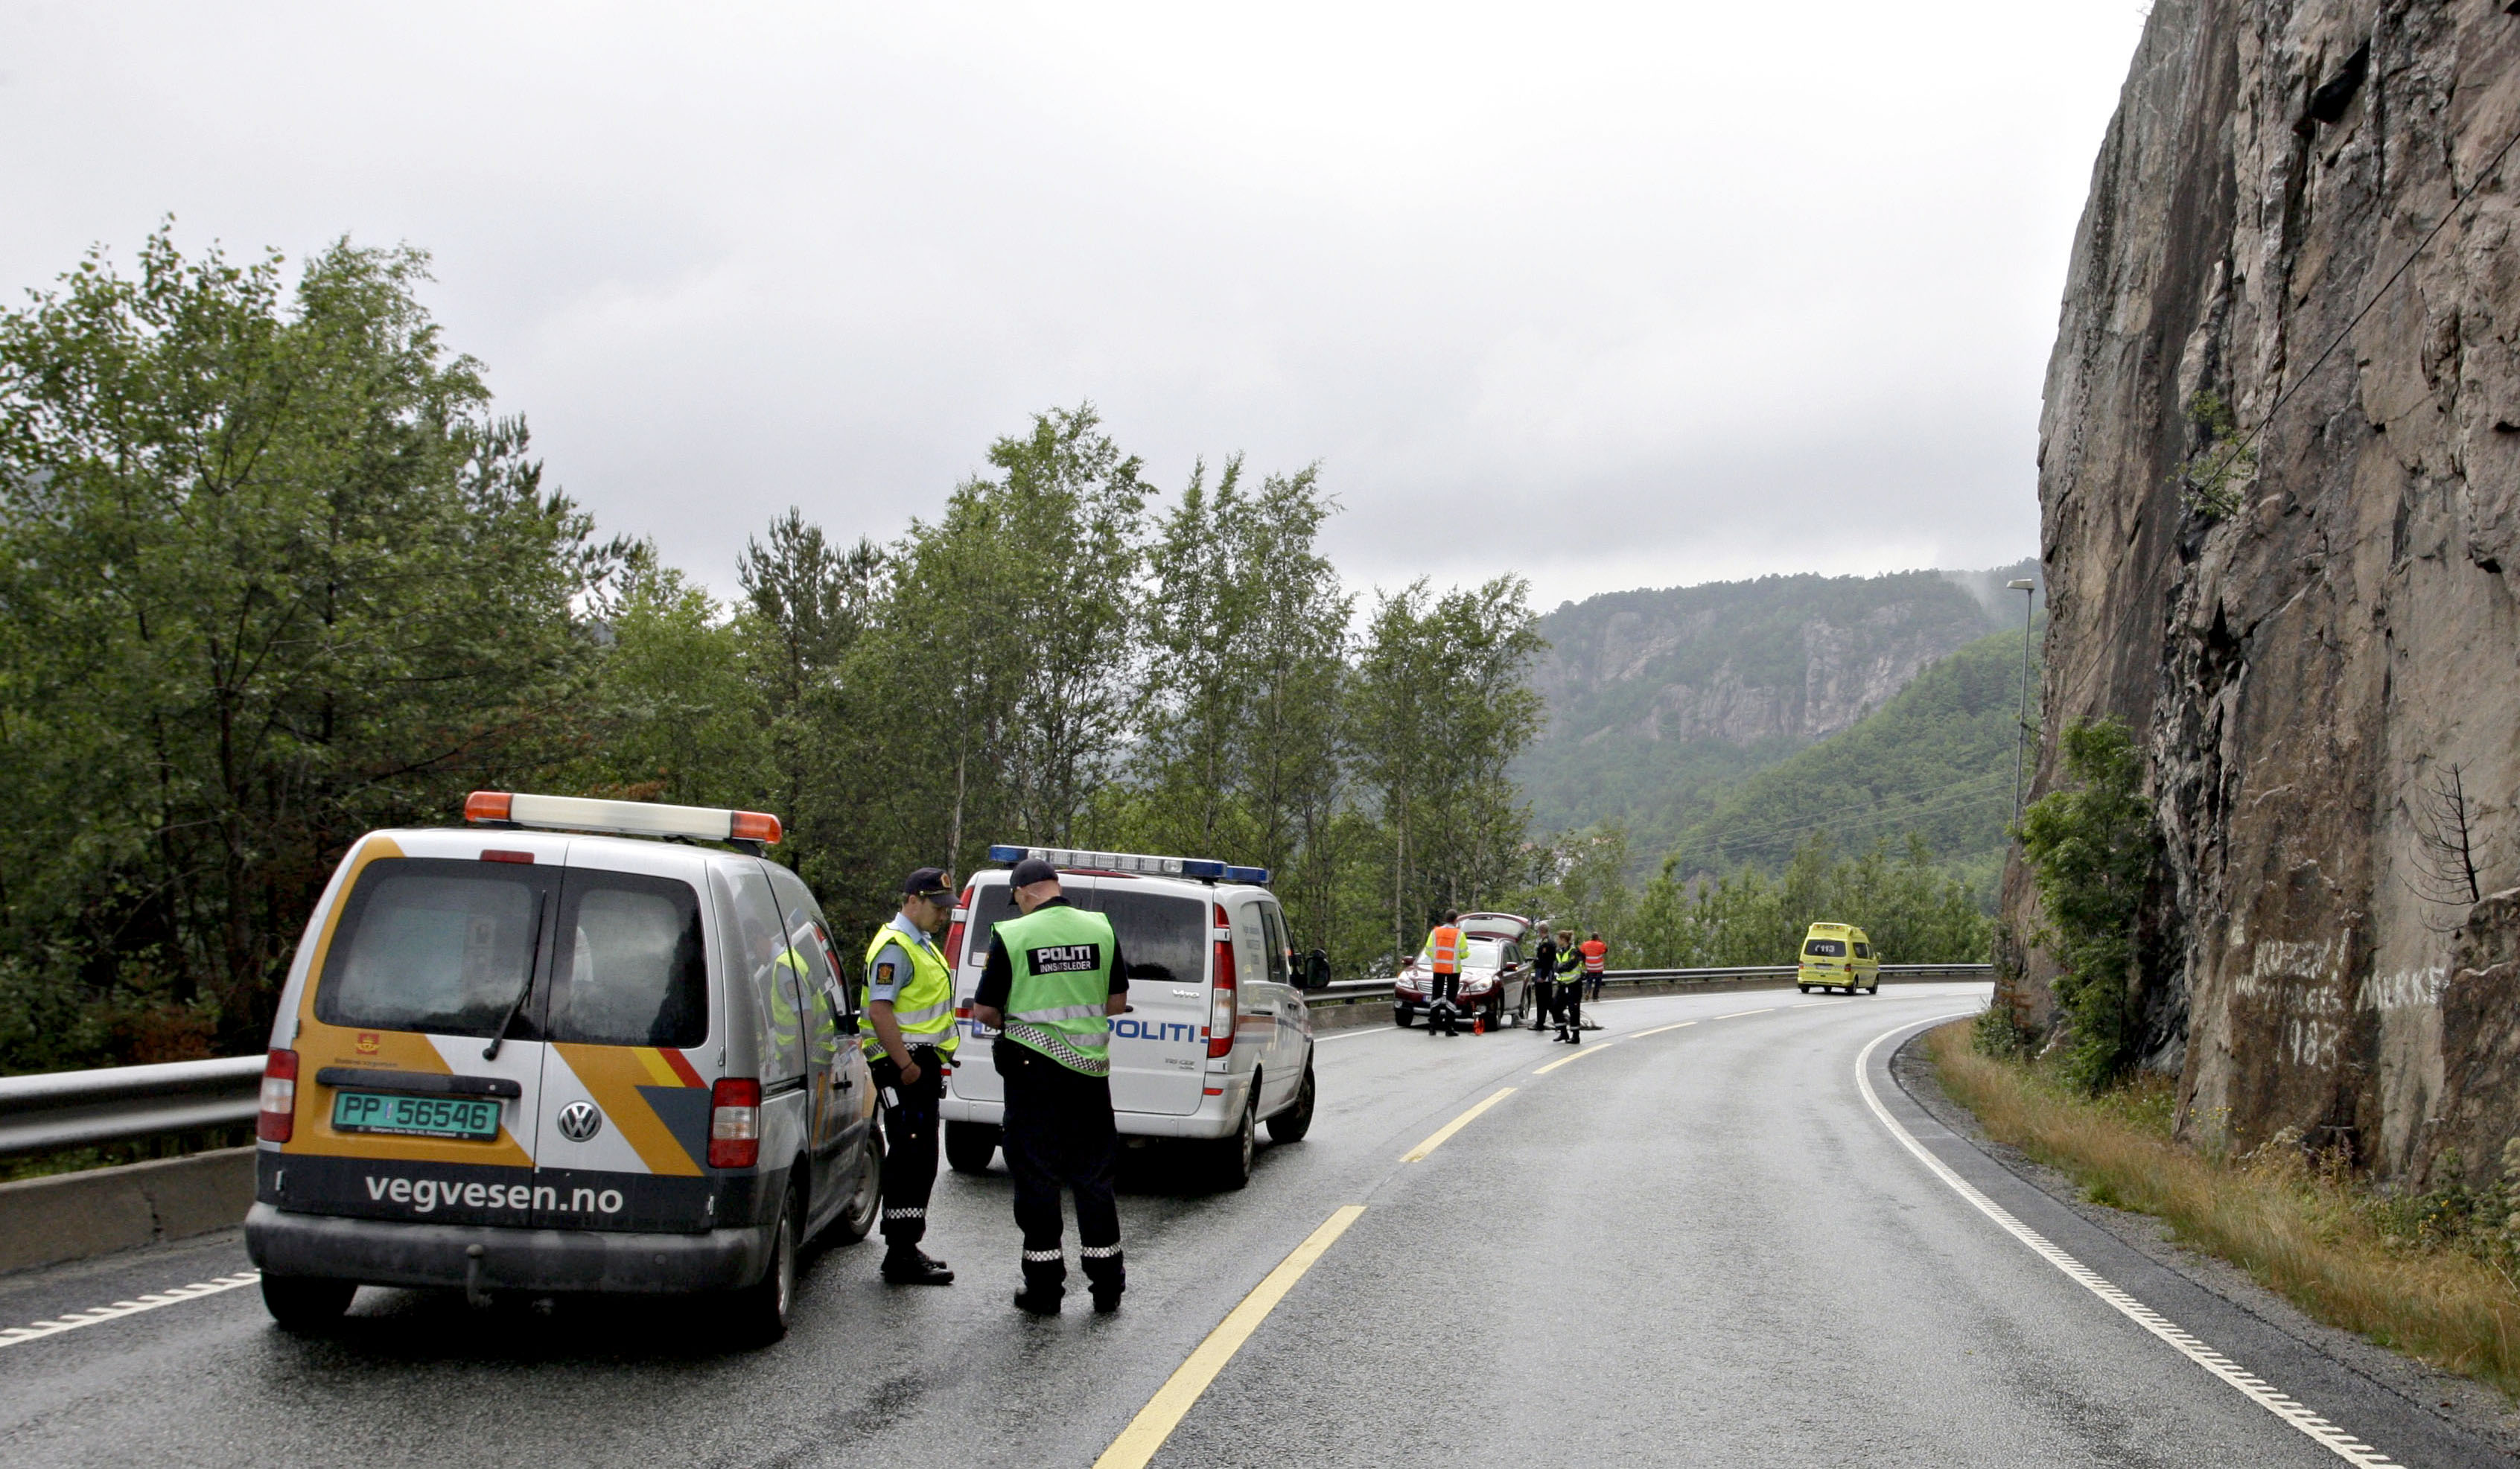 Fler norska poliser ska patrullera landsgränsen.